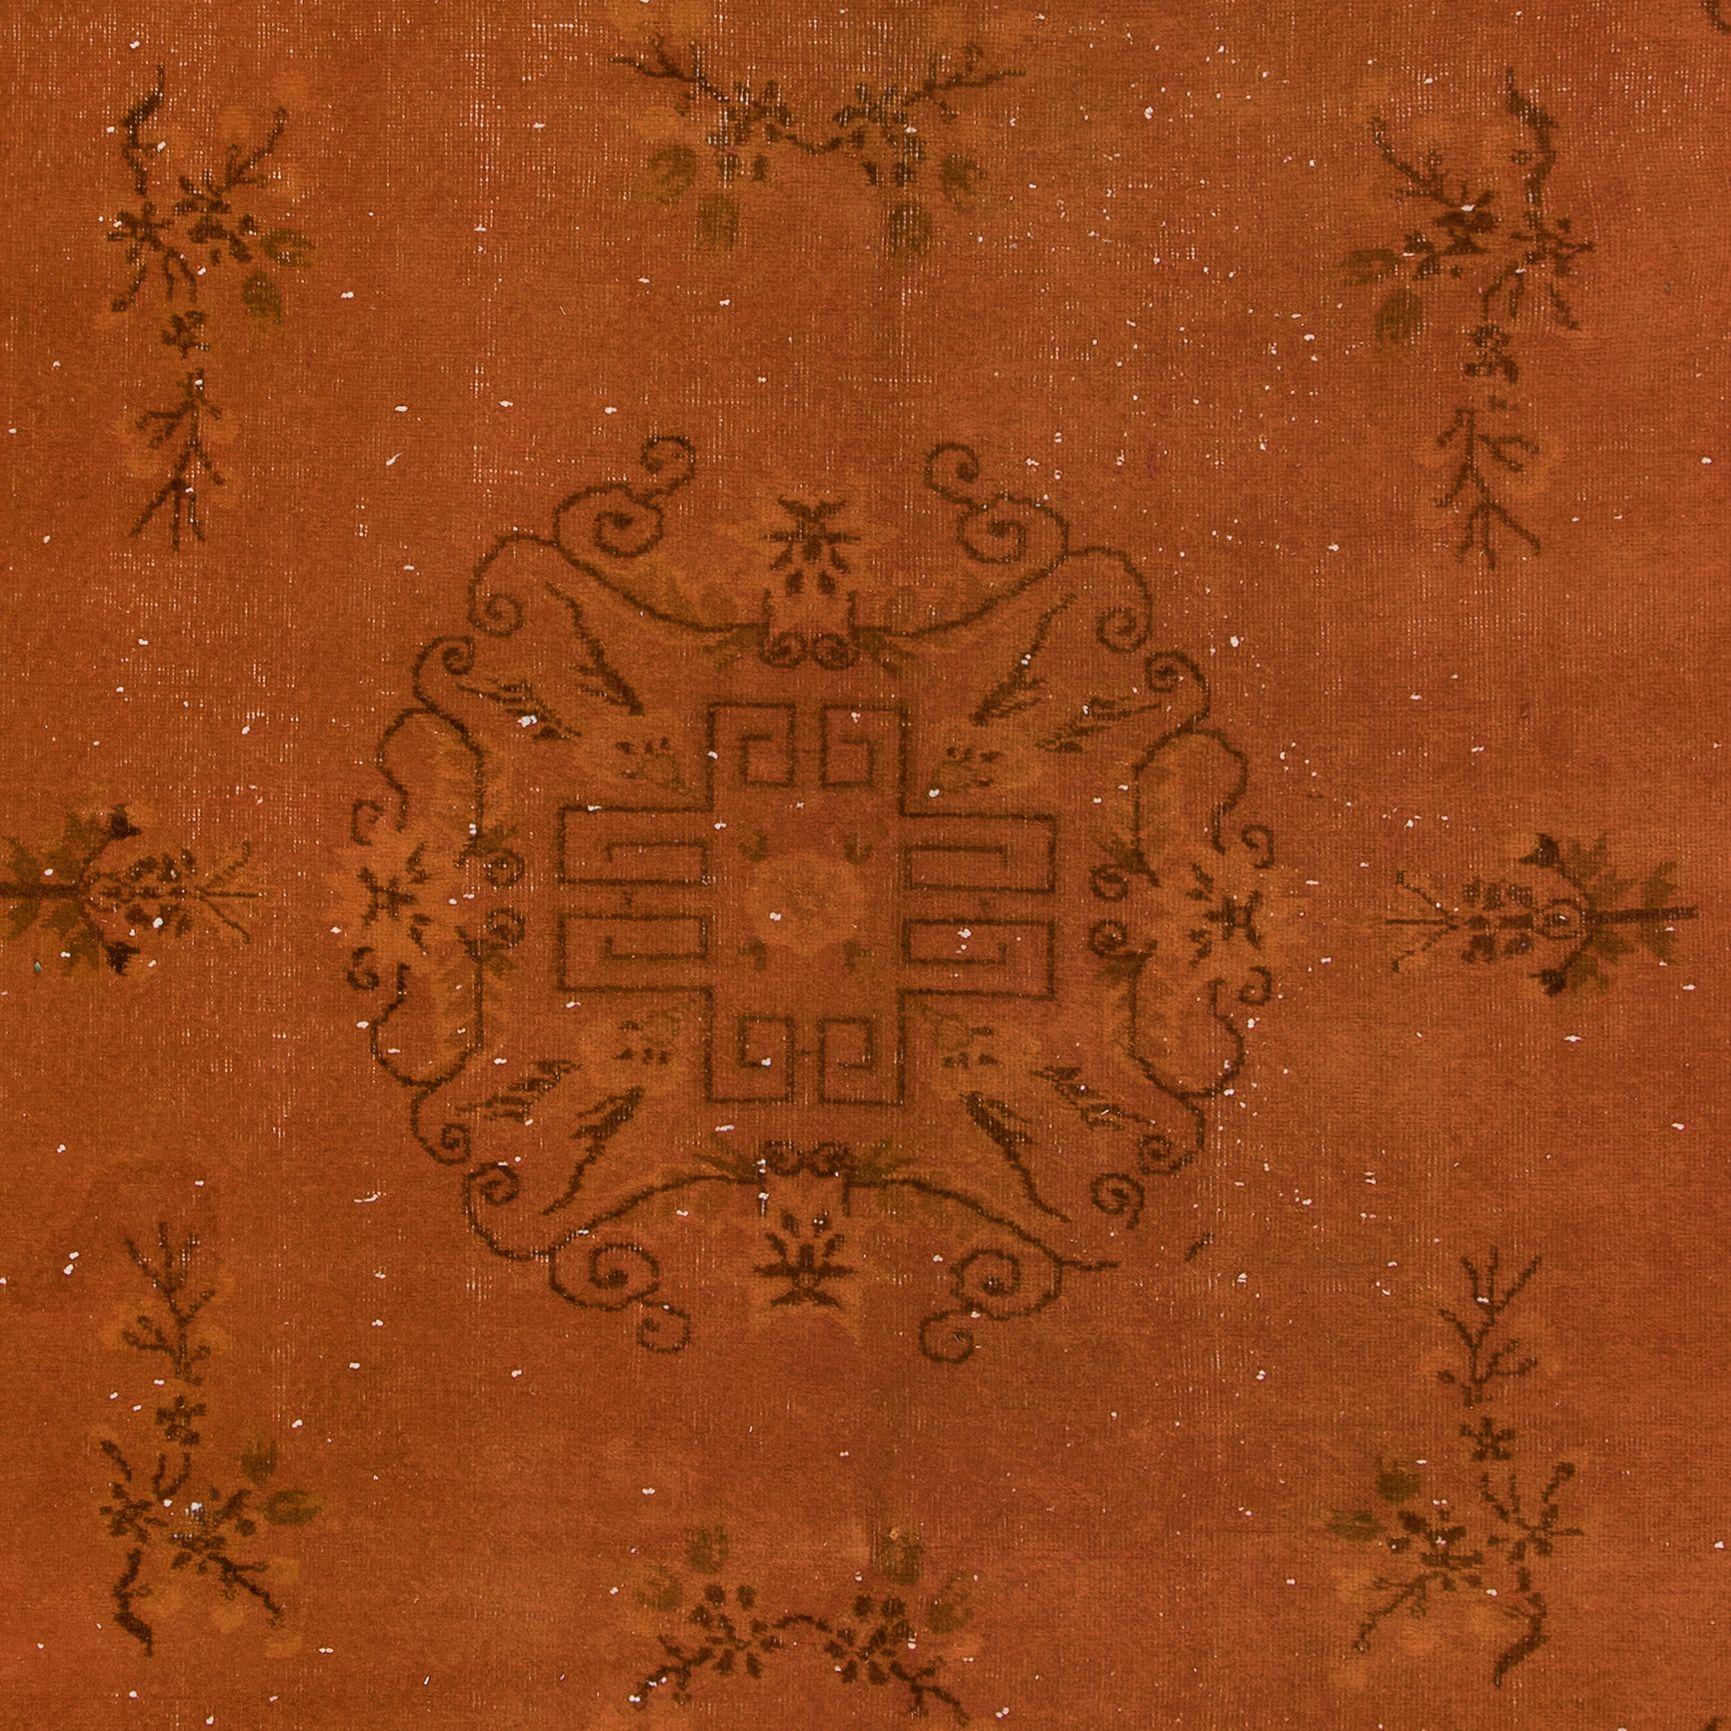 20th Century 6.4x10 Ft Handmade Turkish Rug, Orange Art Deco Carpet for Modern Living Room For Sale